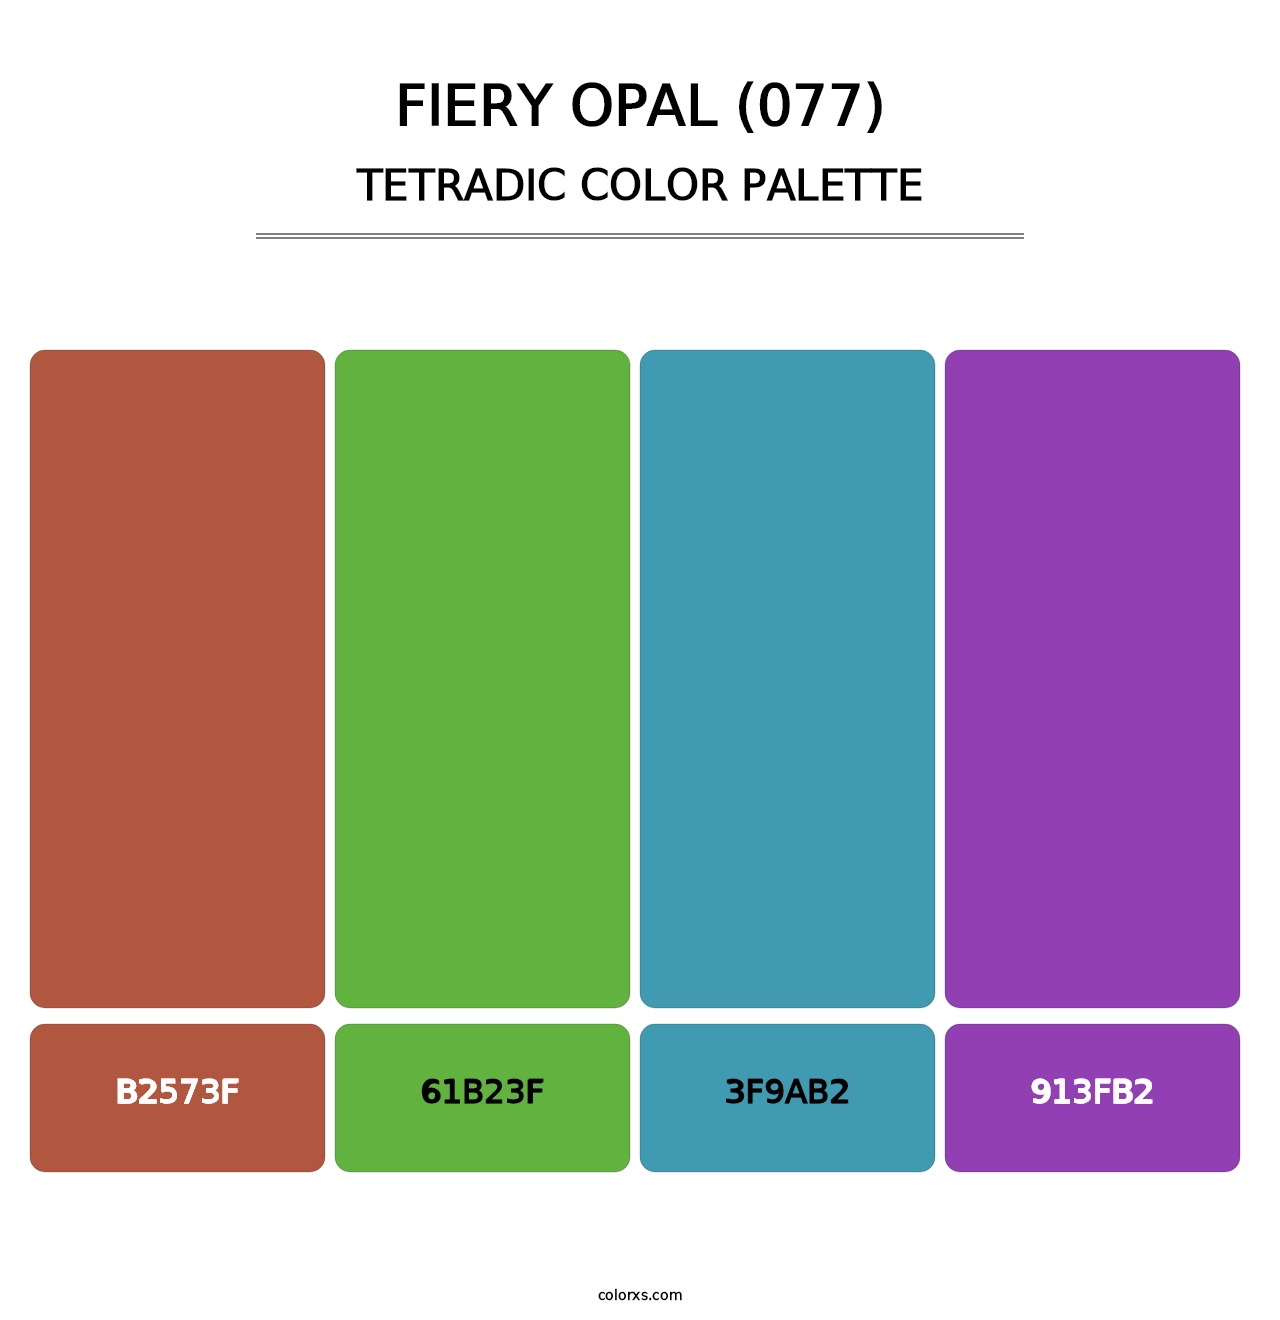 Fiery Opal (077) - Tetradic Color Palette